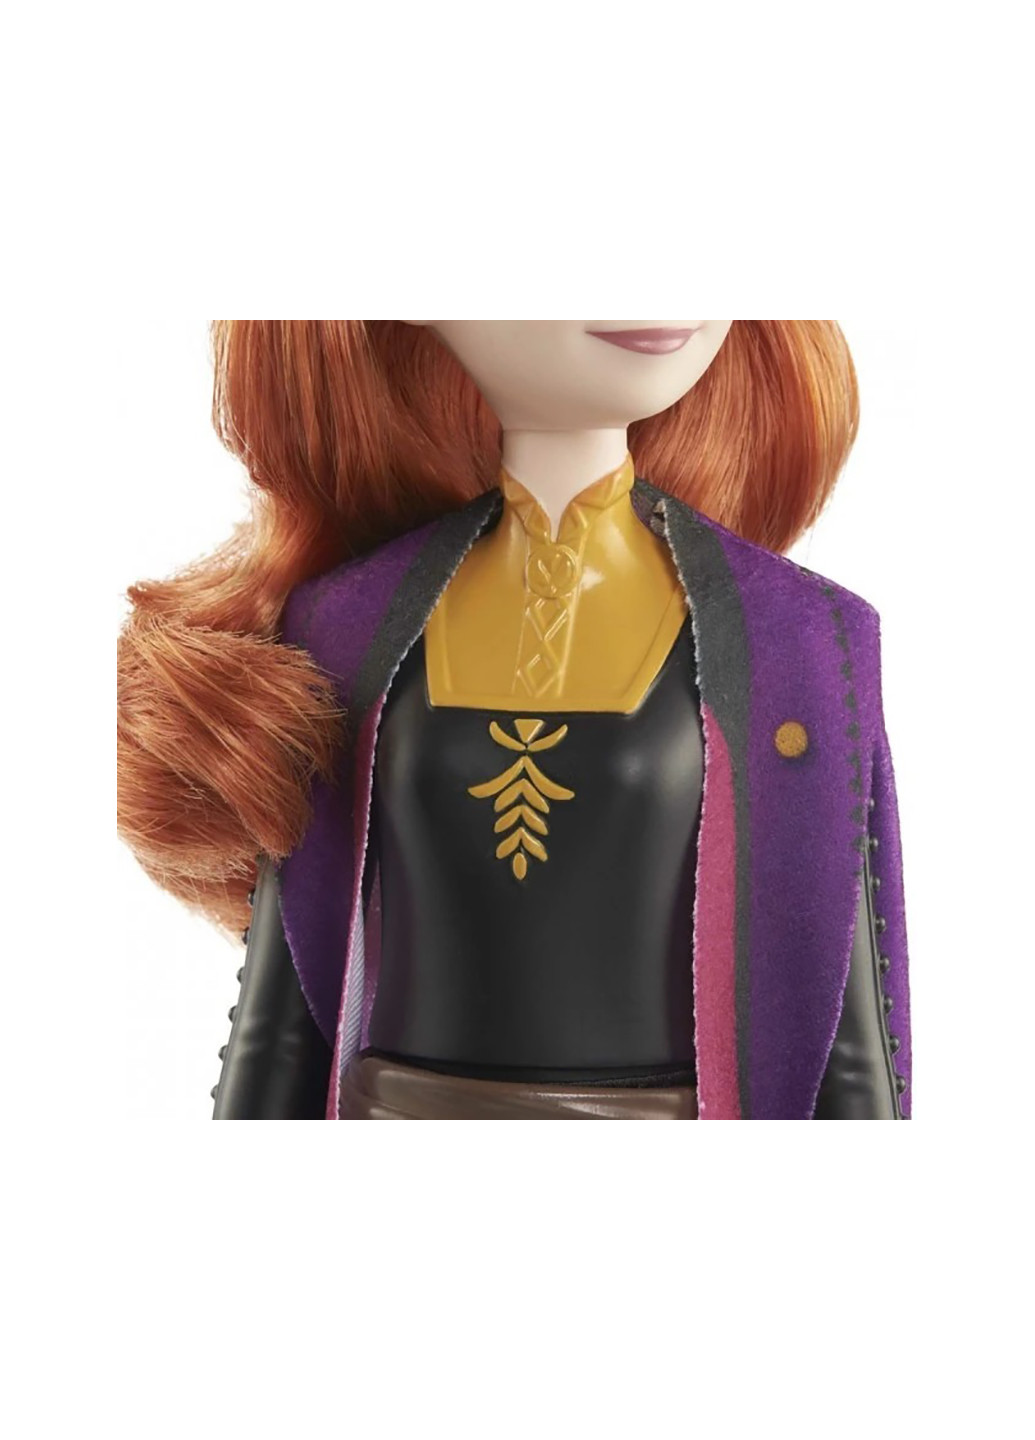 Лялька-принцеса HLW50 в образі мандрівниці Disney Frozen (259792813)